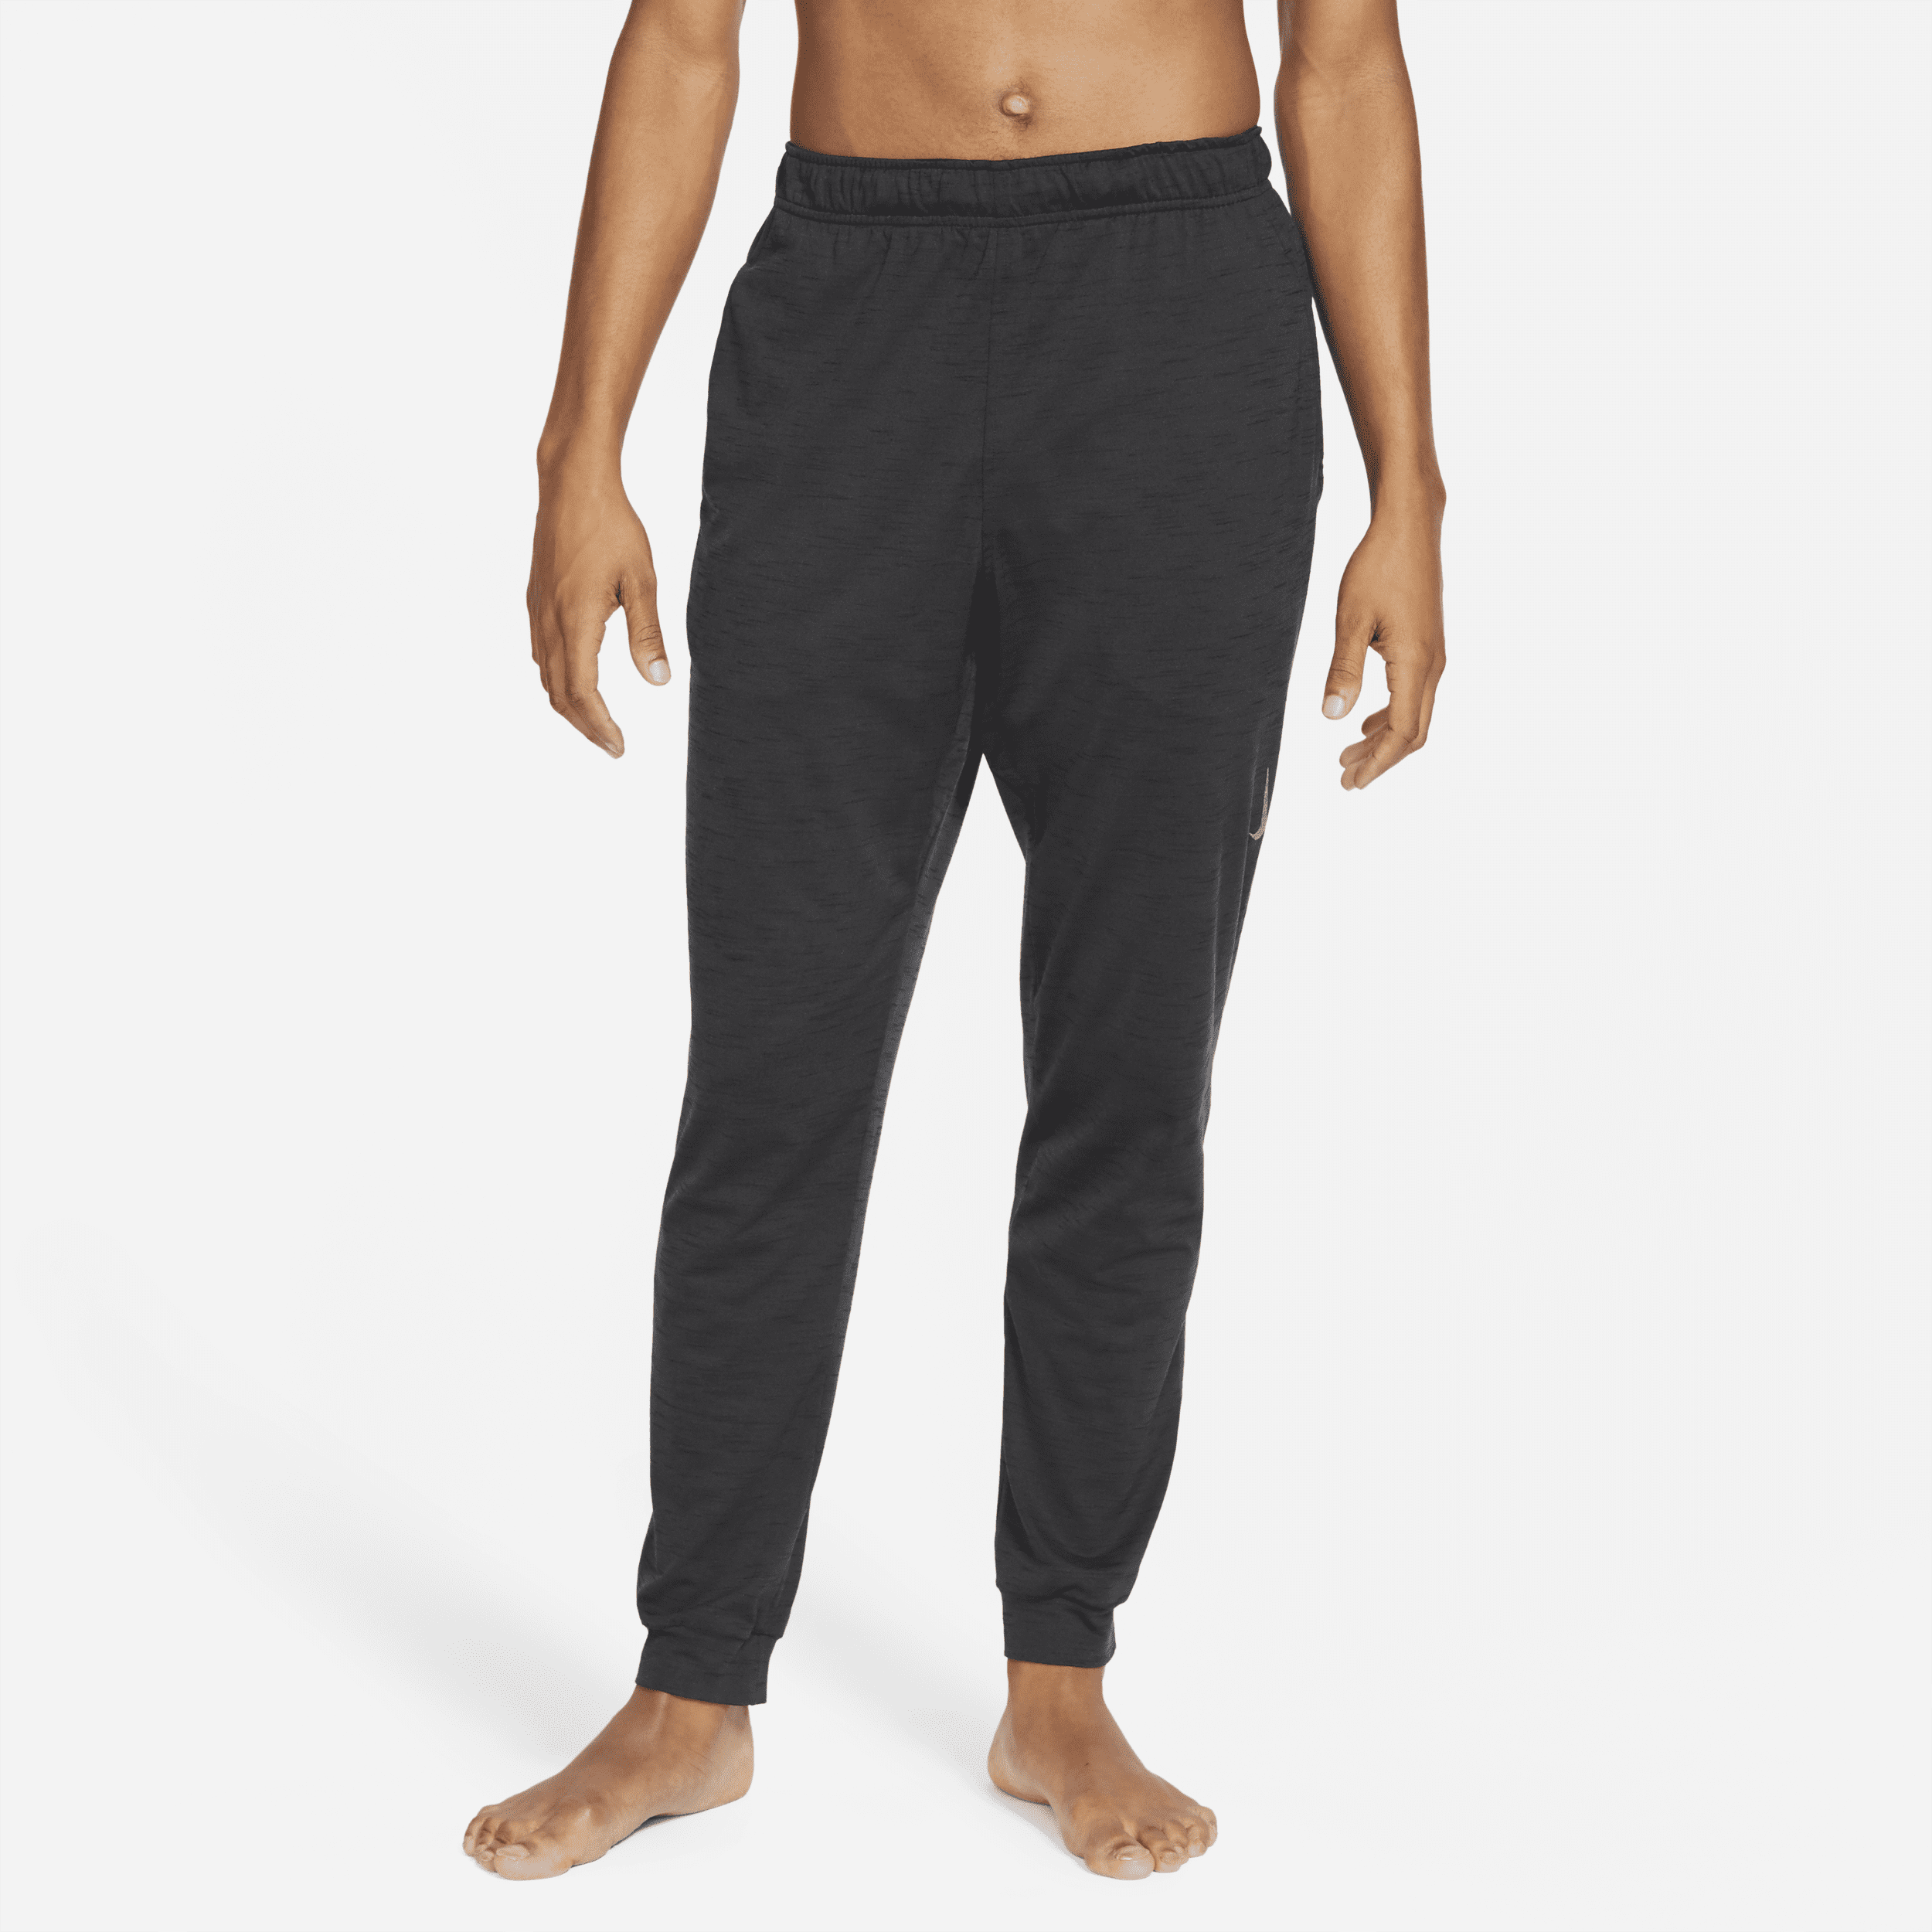 Nike Yoga Dri-FIT Pantalón - Hombre - Negro